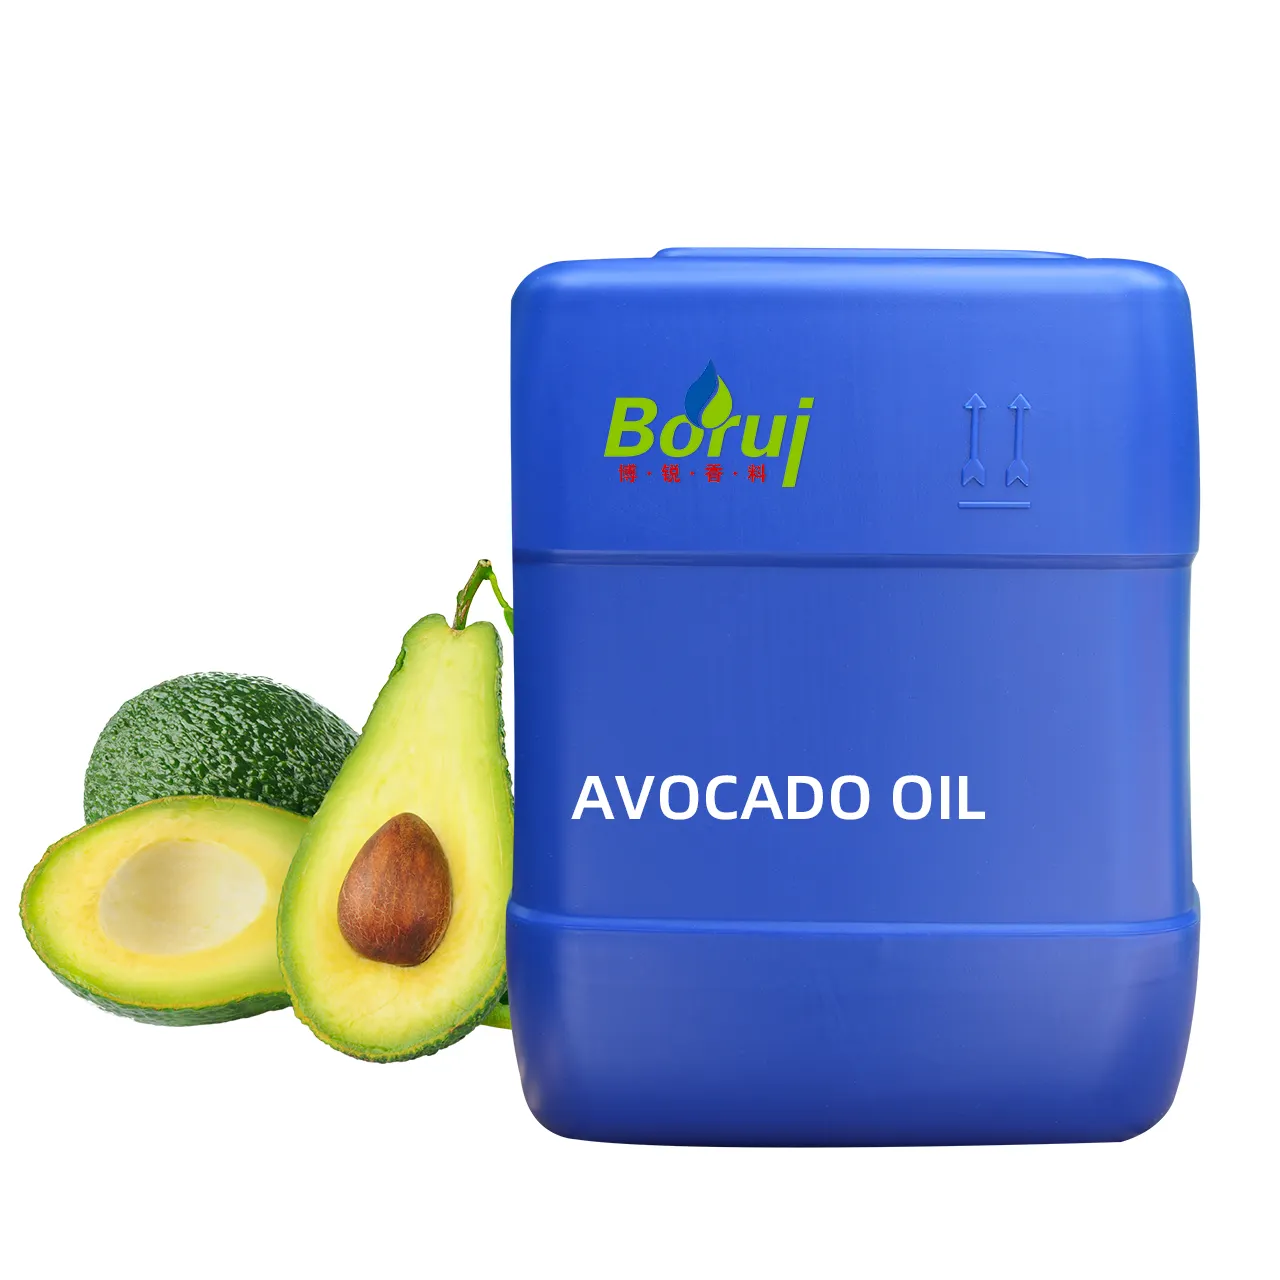 थोक मूल्य परिष्कृत aceite डे aguacate aceite portador कार्बनिक शीत में दबाया वाहक तेल avocado बीज बाल तेल थोक